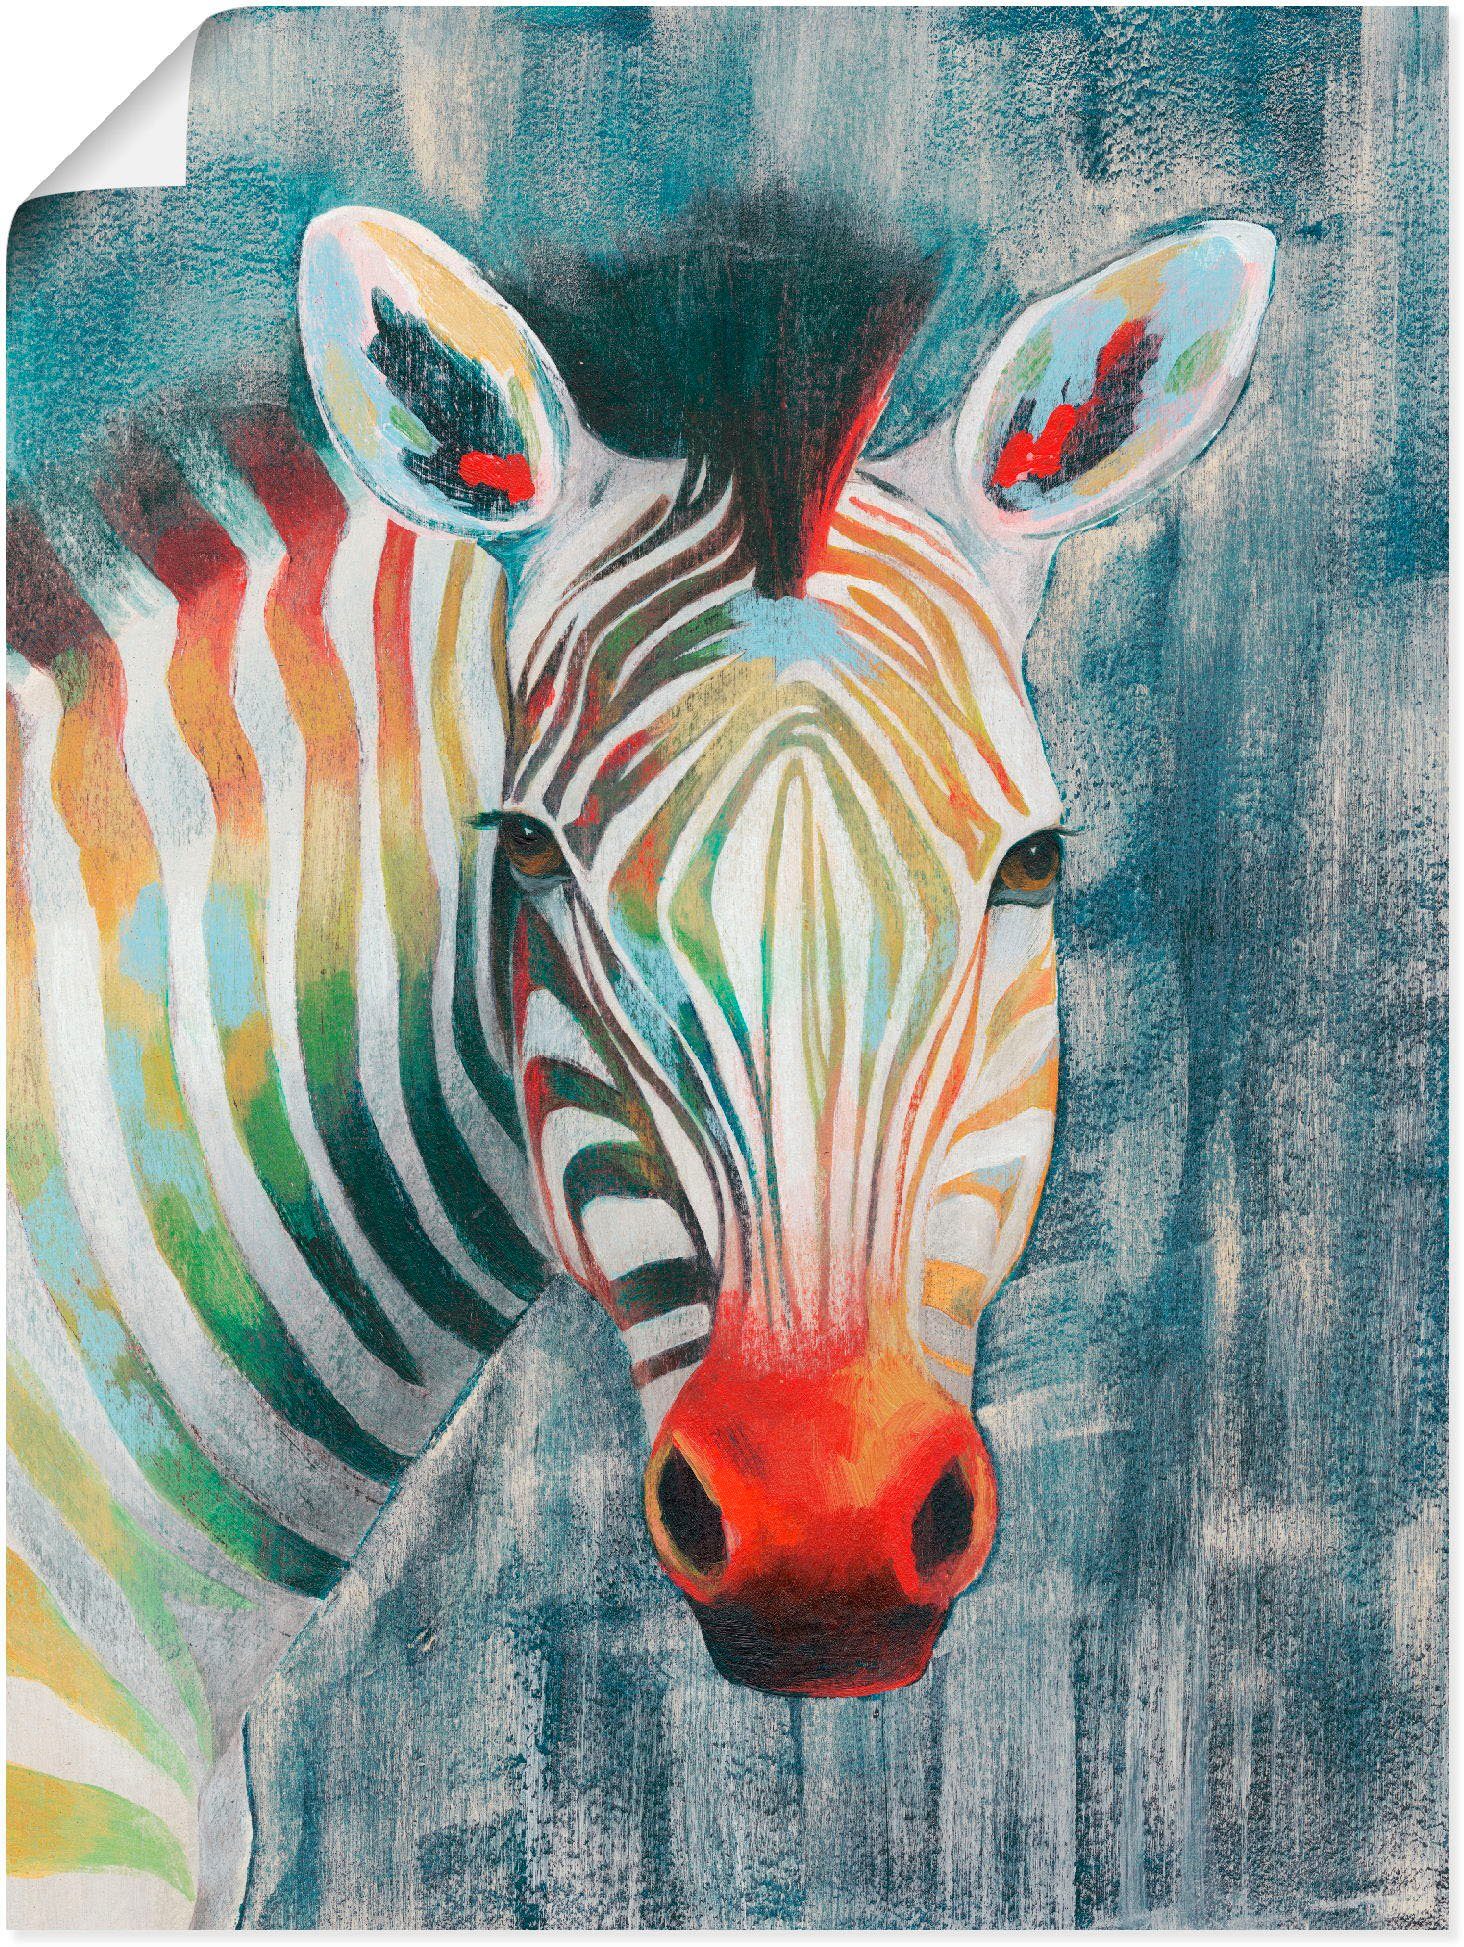 Artland Artprint Prisma zebra I in vele afmetingen & productsoorten - artprint van aluminium / artprint voor buiten, artprint op linnen, poster, muursticker / wandfolie ook geschik